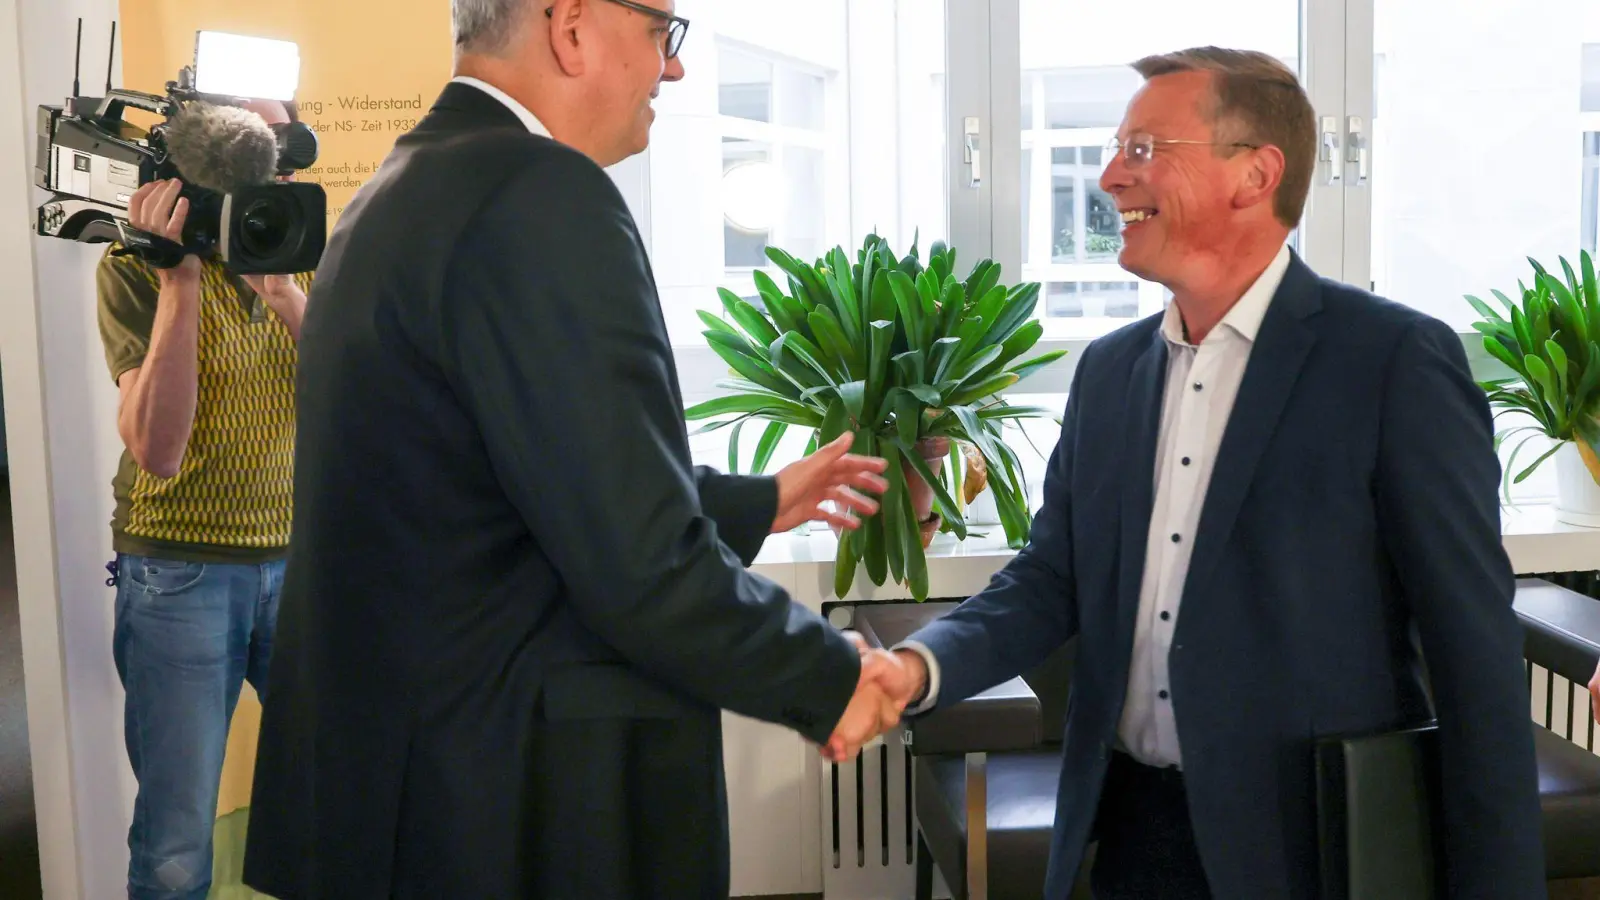 Spitzenkandidat Frank Imhoff (CDU) und Bürgermeister Andreas Bovenschulte (SPD) begrüßen einander vor Beginn der Sondierungsgespräche zwischen beiden Parteien. (Foto: Focke Strangmann/dpa)